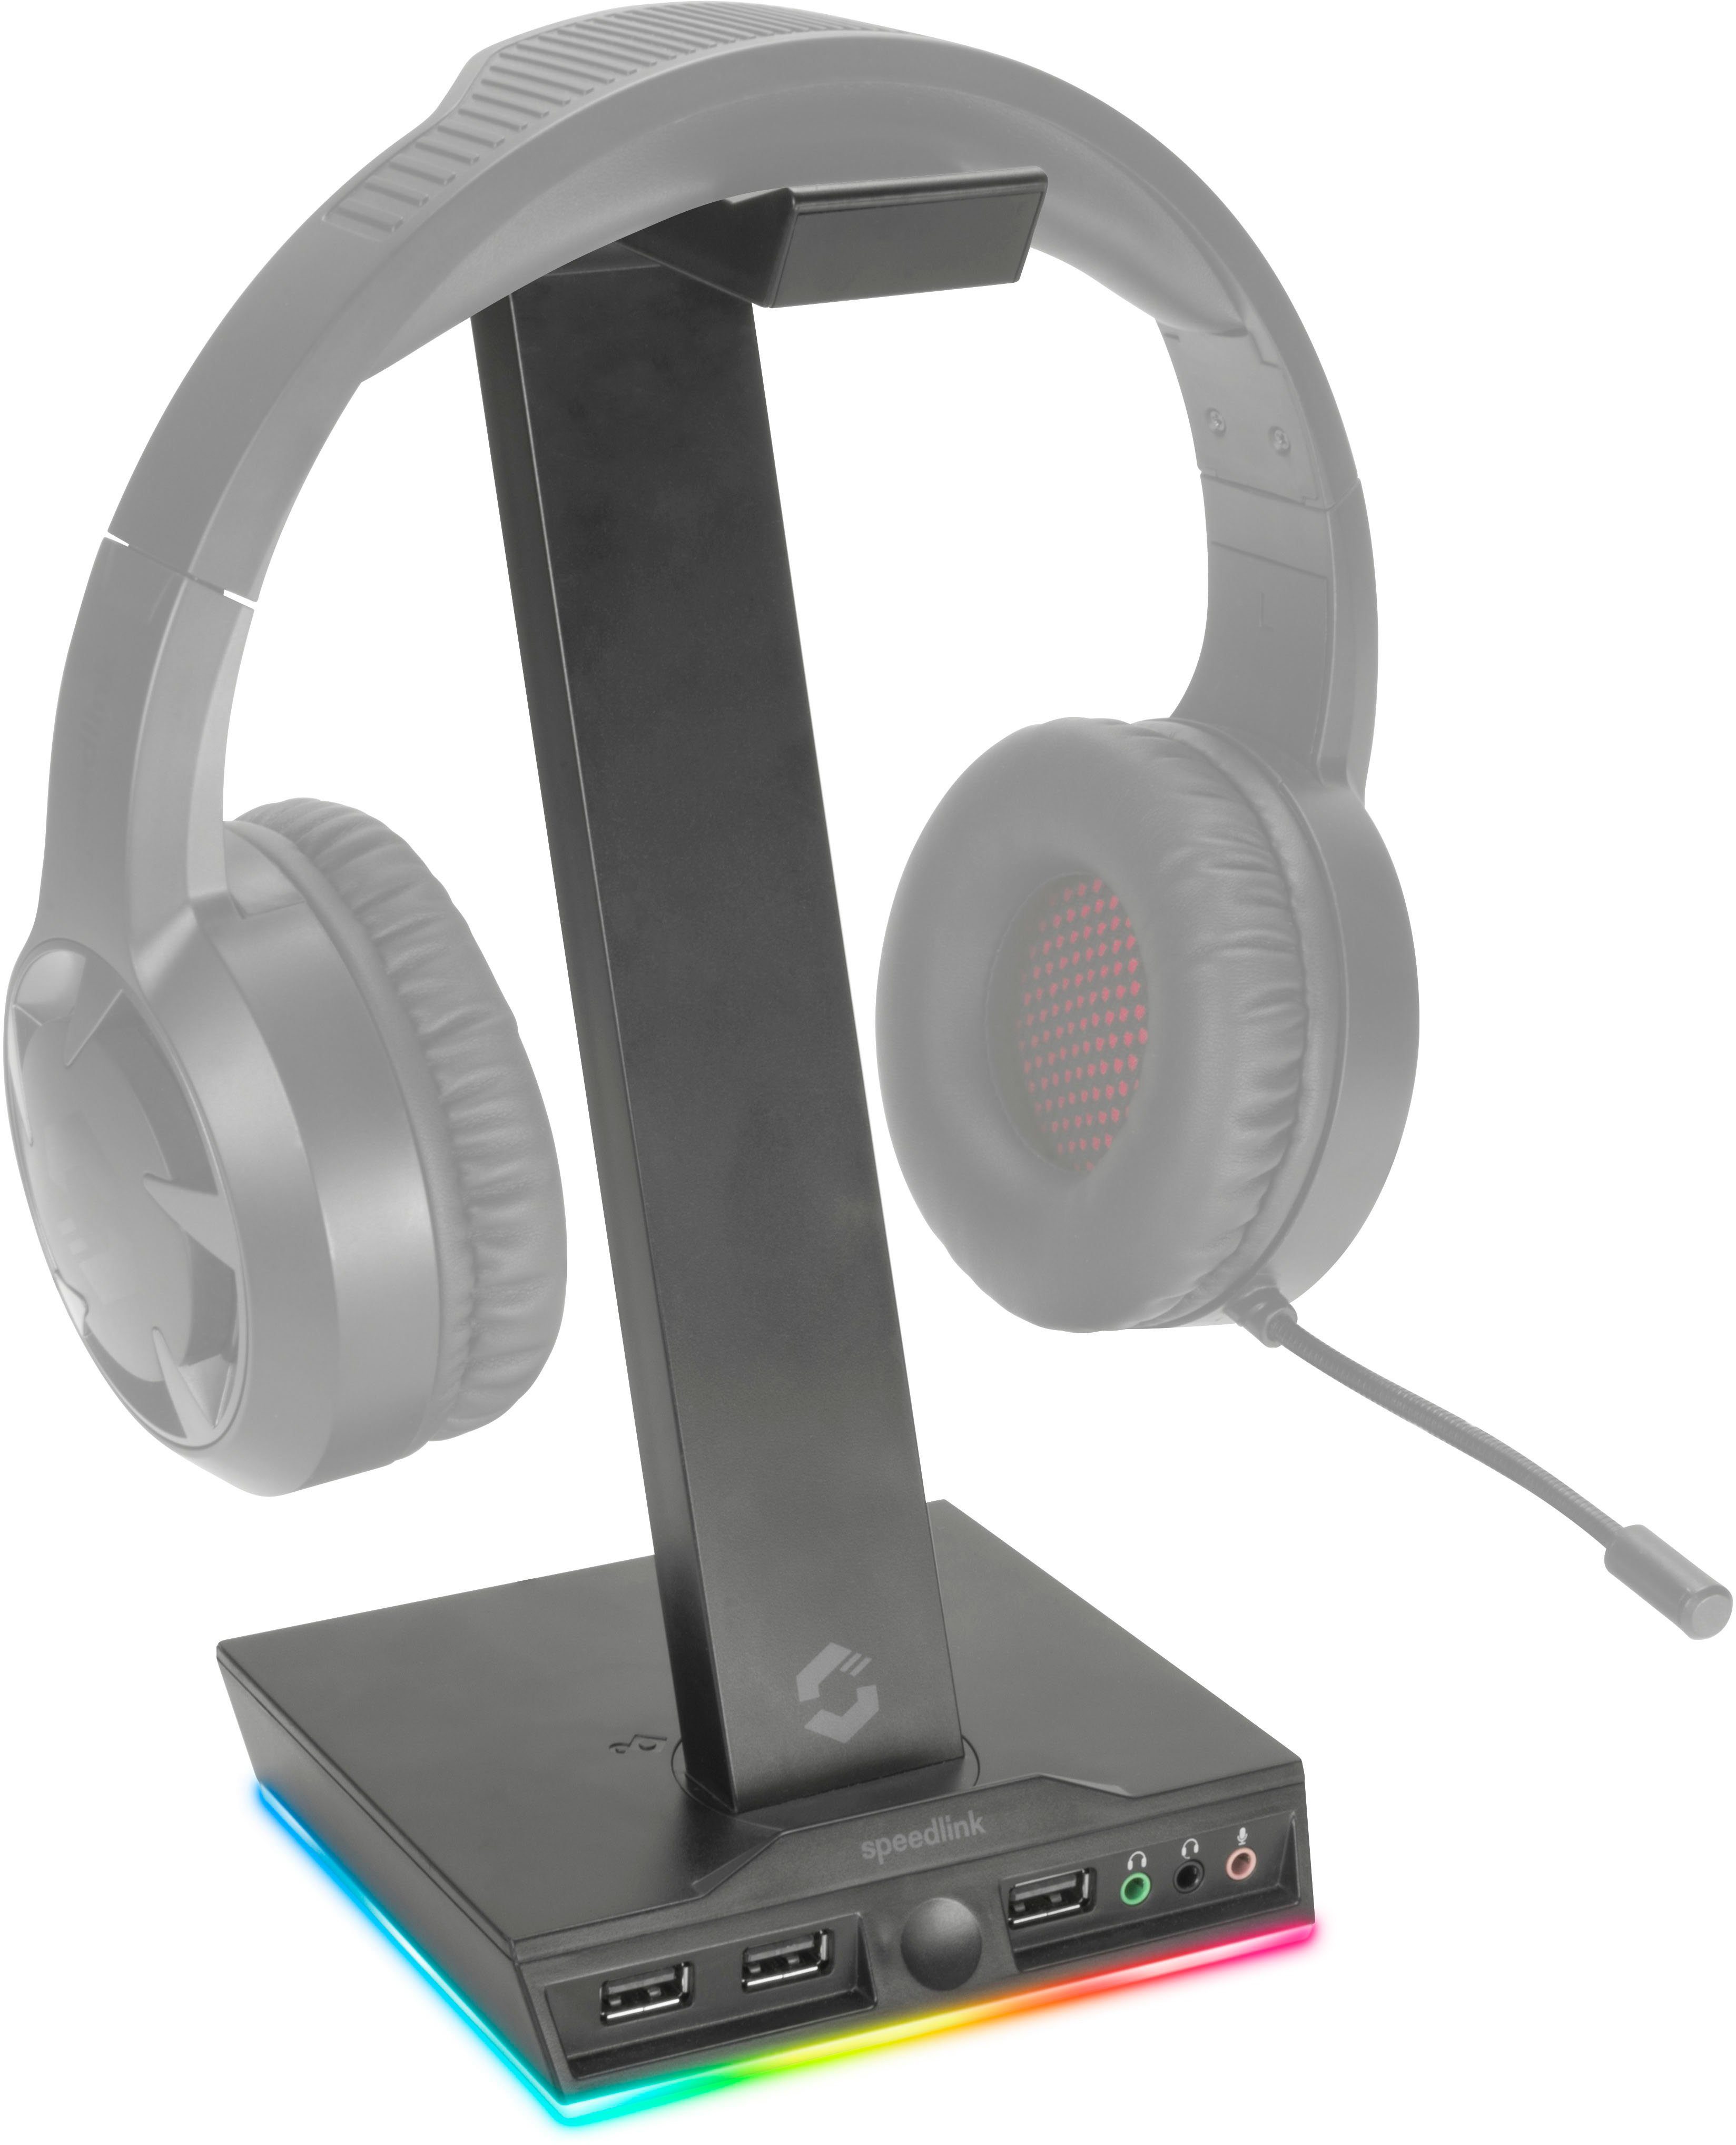 Speedlink Stand mit Beleuchtung Gaming-Headset Zubehör (3-Port USB 2.0  Hub), 3 Klinkenstecker-Anschlüsse für Headset, Kopfhörer und Mikrofon